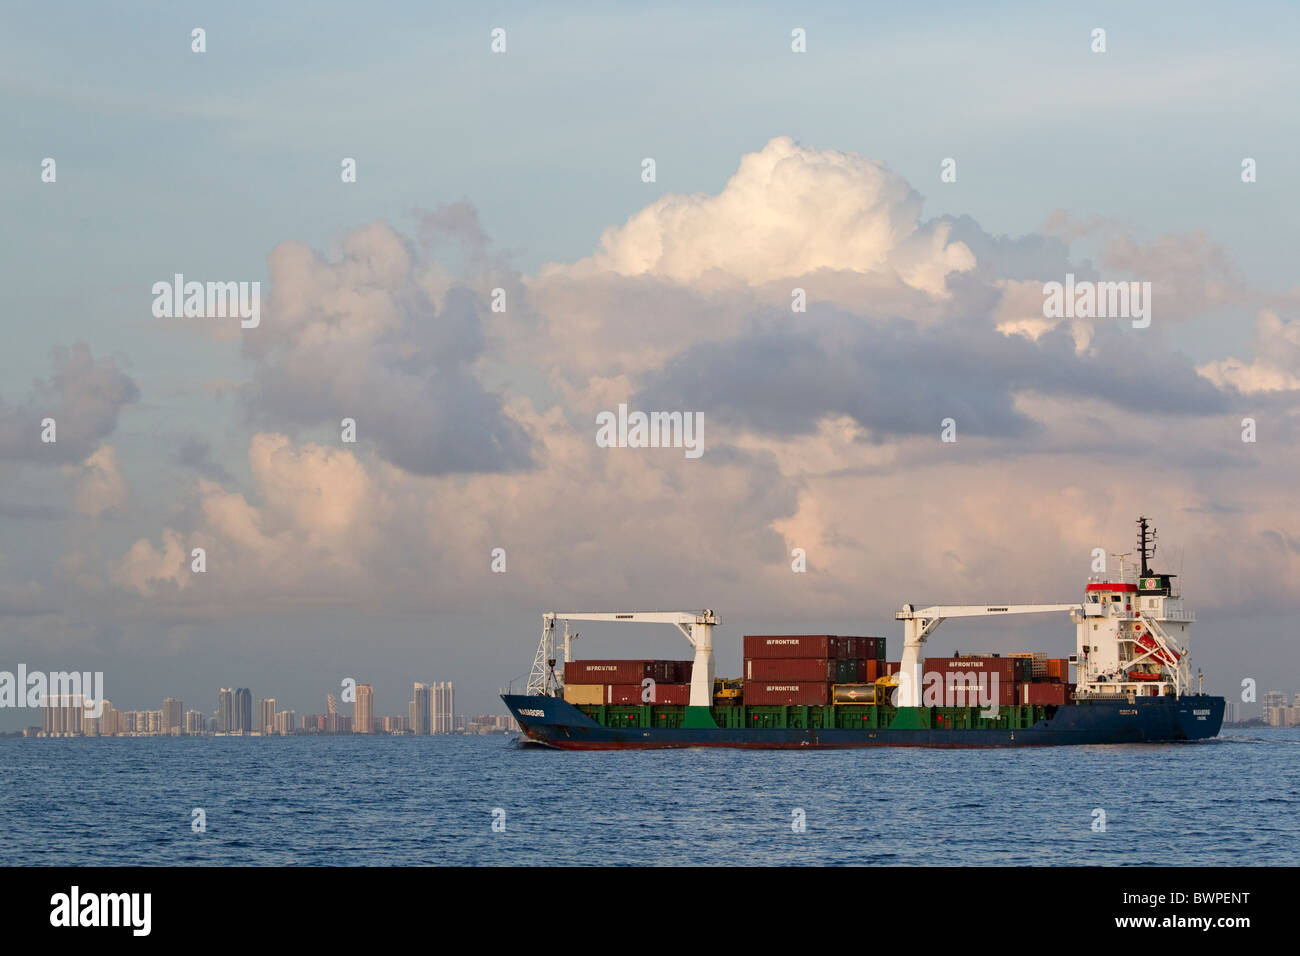 Cargo ship at sea near city, Daytona, Florida Stock Photo